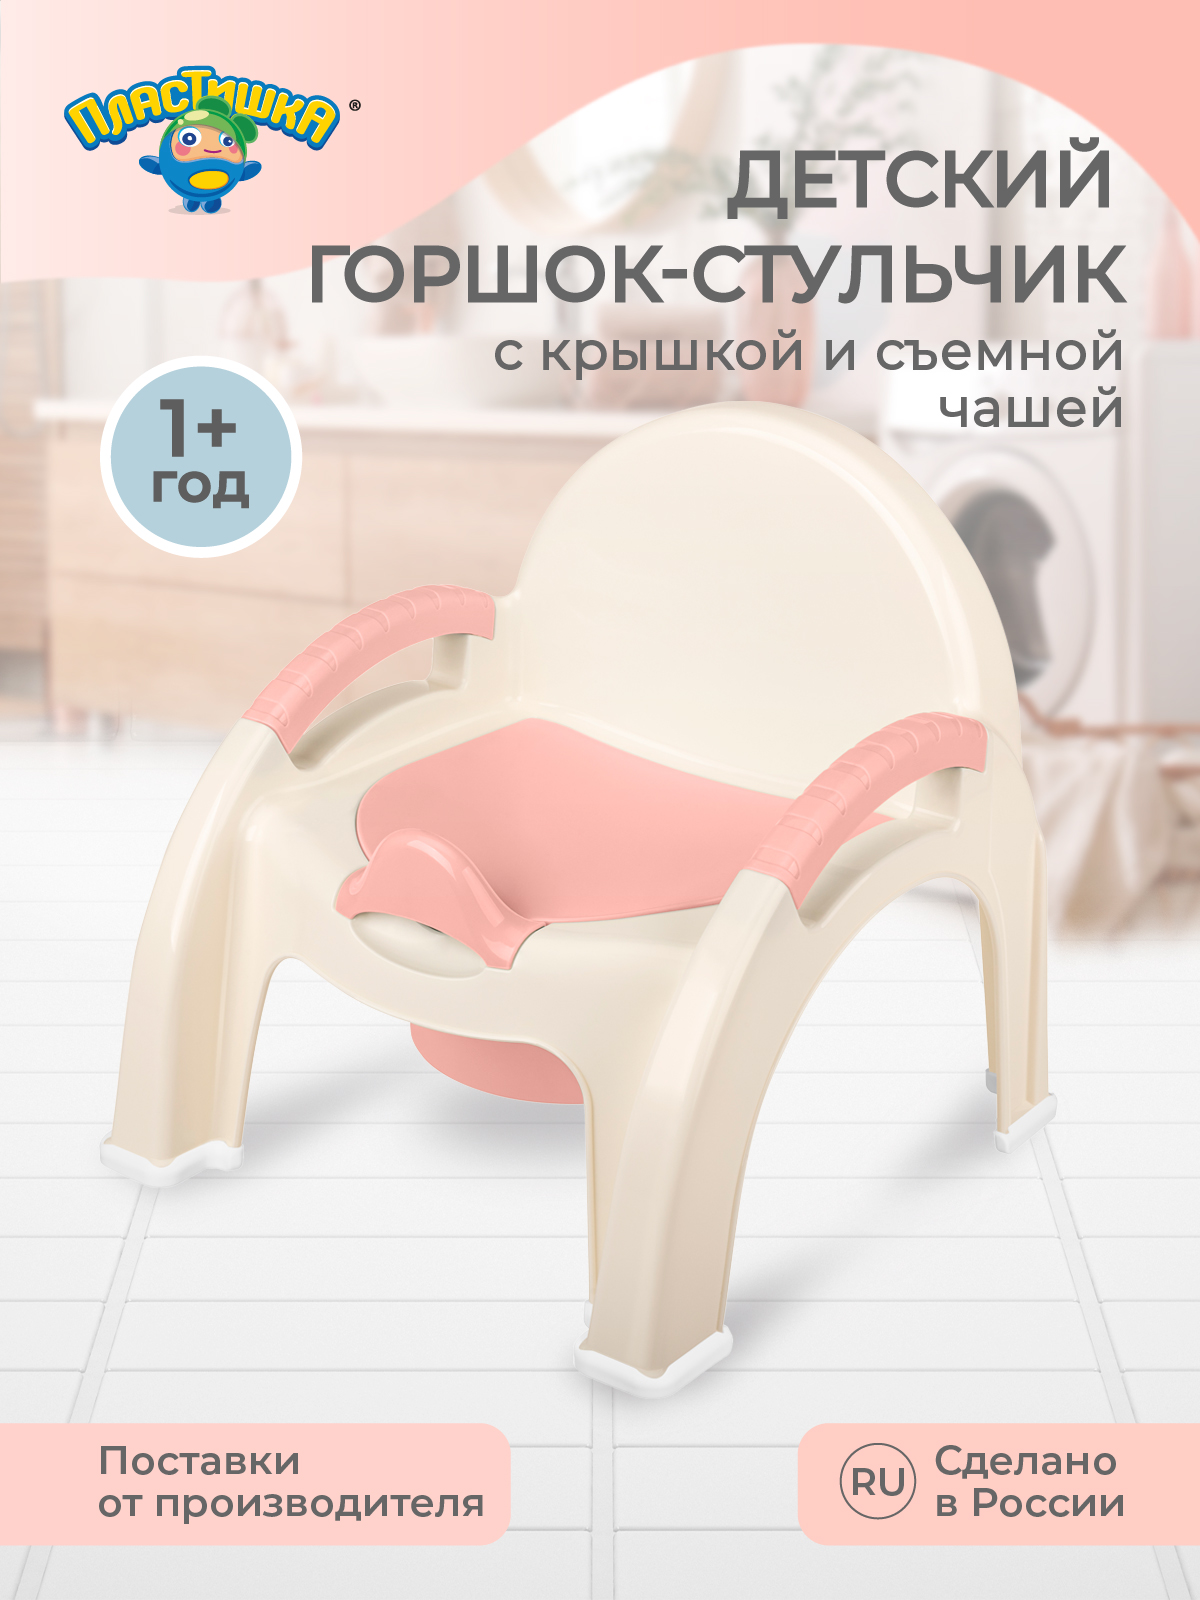 Горшок-стульчик Пластишка детский светло-розовый - фото 1